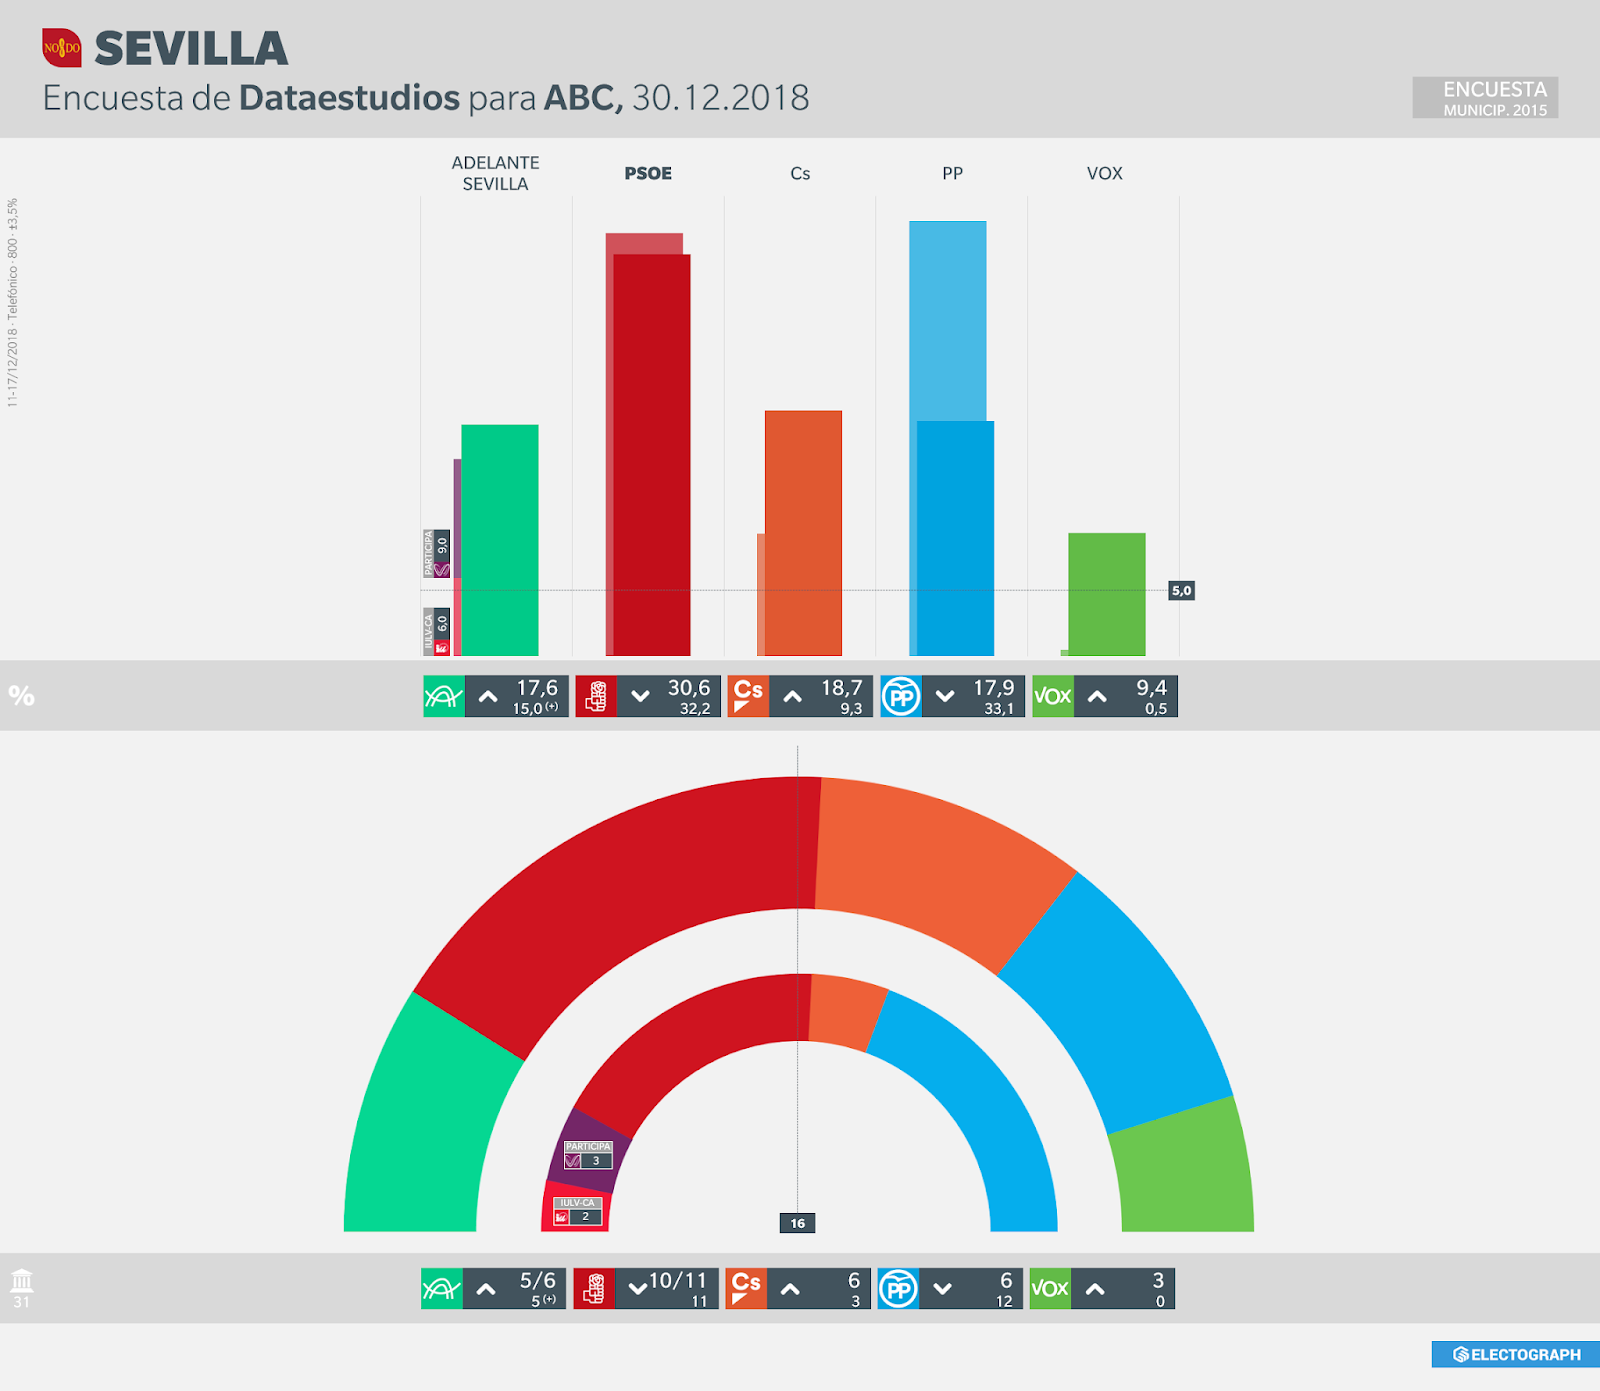 Gráfico de la encuesta para elecciones municipales en Sevilla realizada por Dataestudios para ABC, 30 de diciembre de 2018